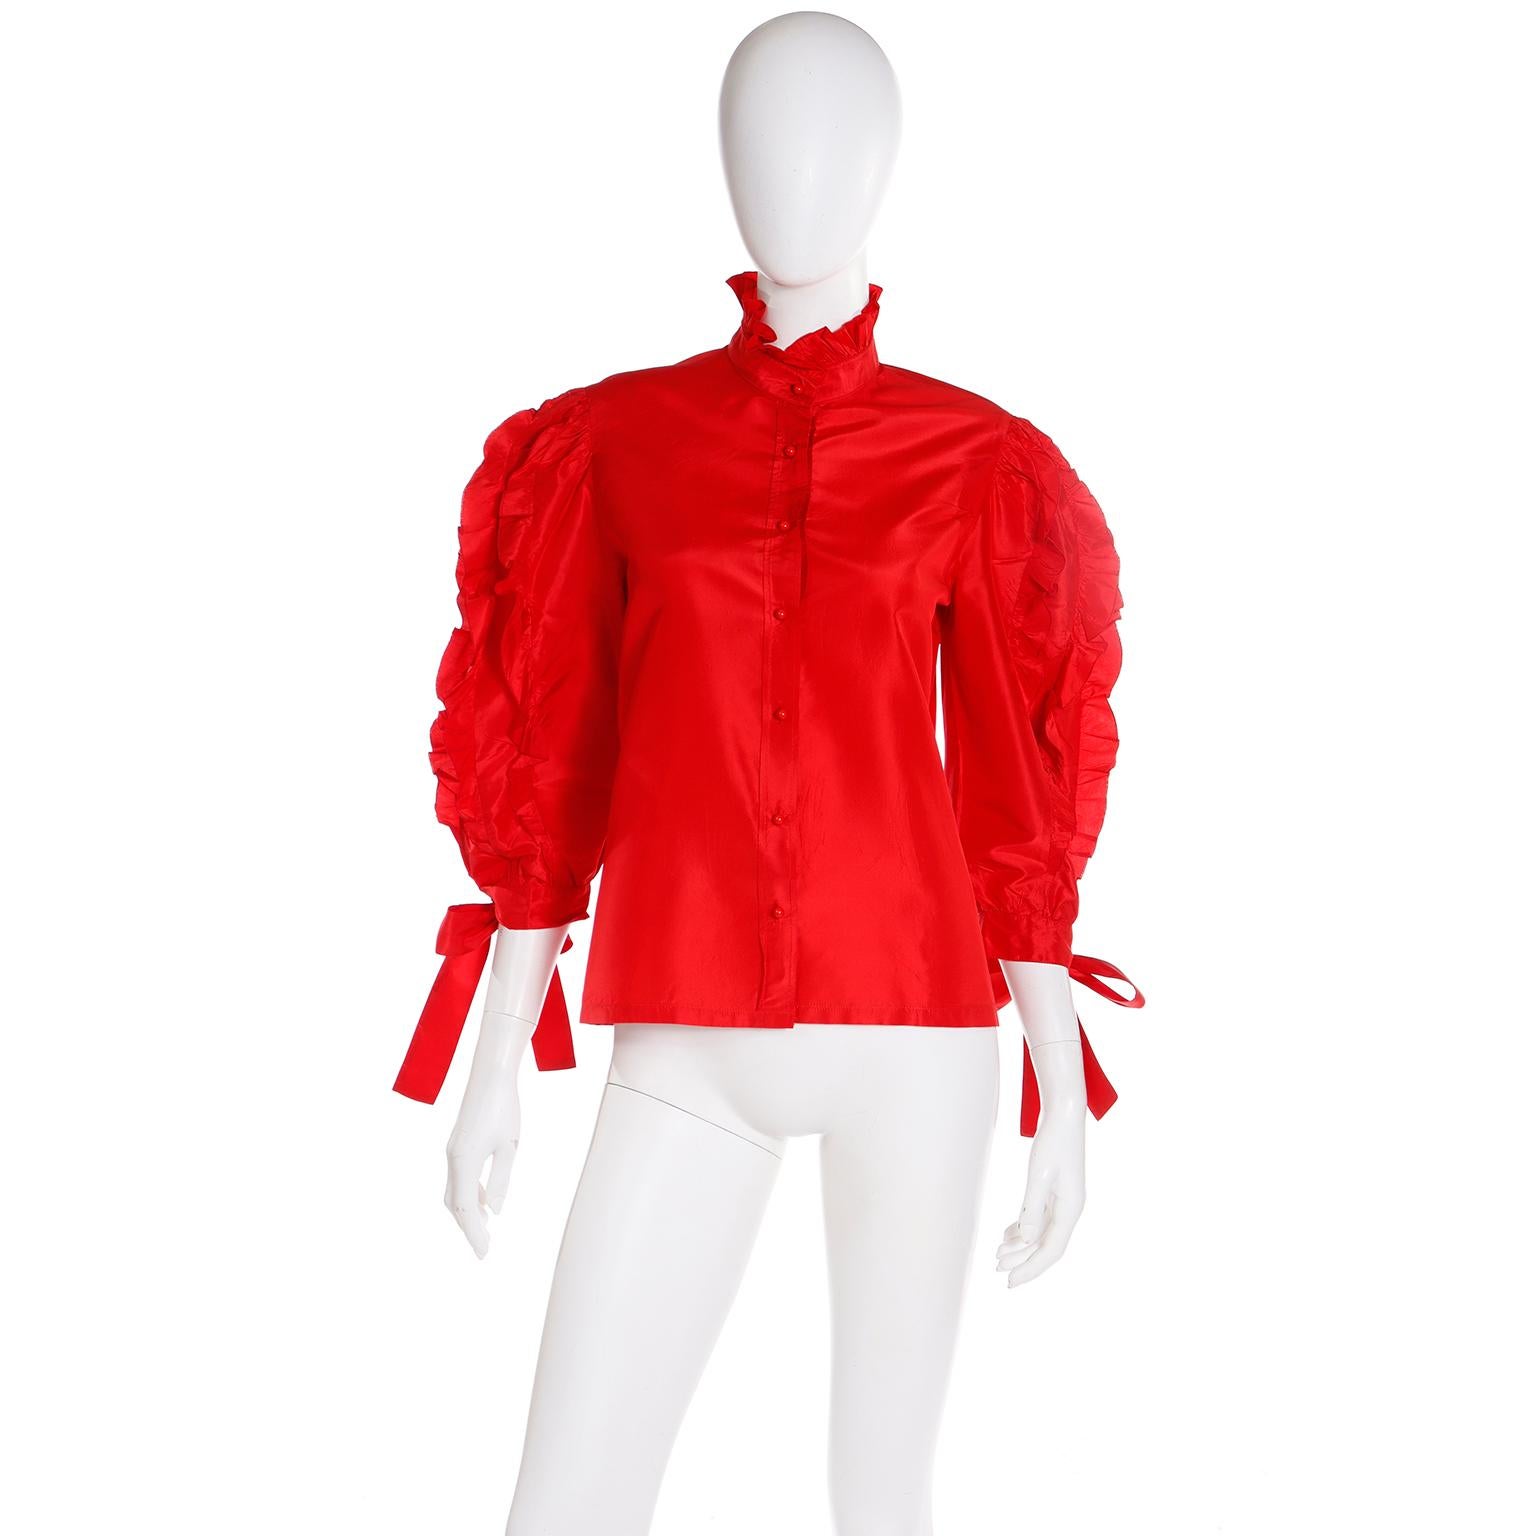 Ce chemisier Louis Feraud vintage des années 1980 est en satin de soie rouge et présente de jolis volants et liens. Ce haut a juste ce qu'il faut de dramatique avec un col à volants et des boutons boules rouges au centre du devant. Chaque manche a